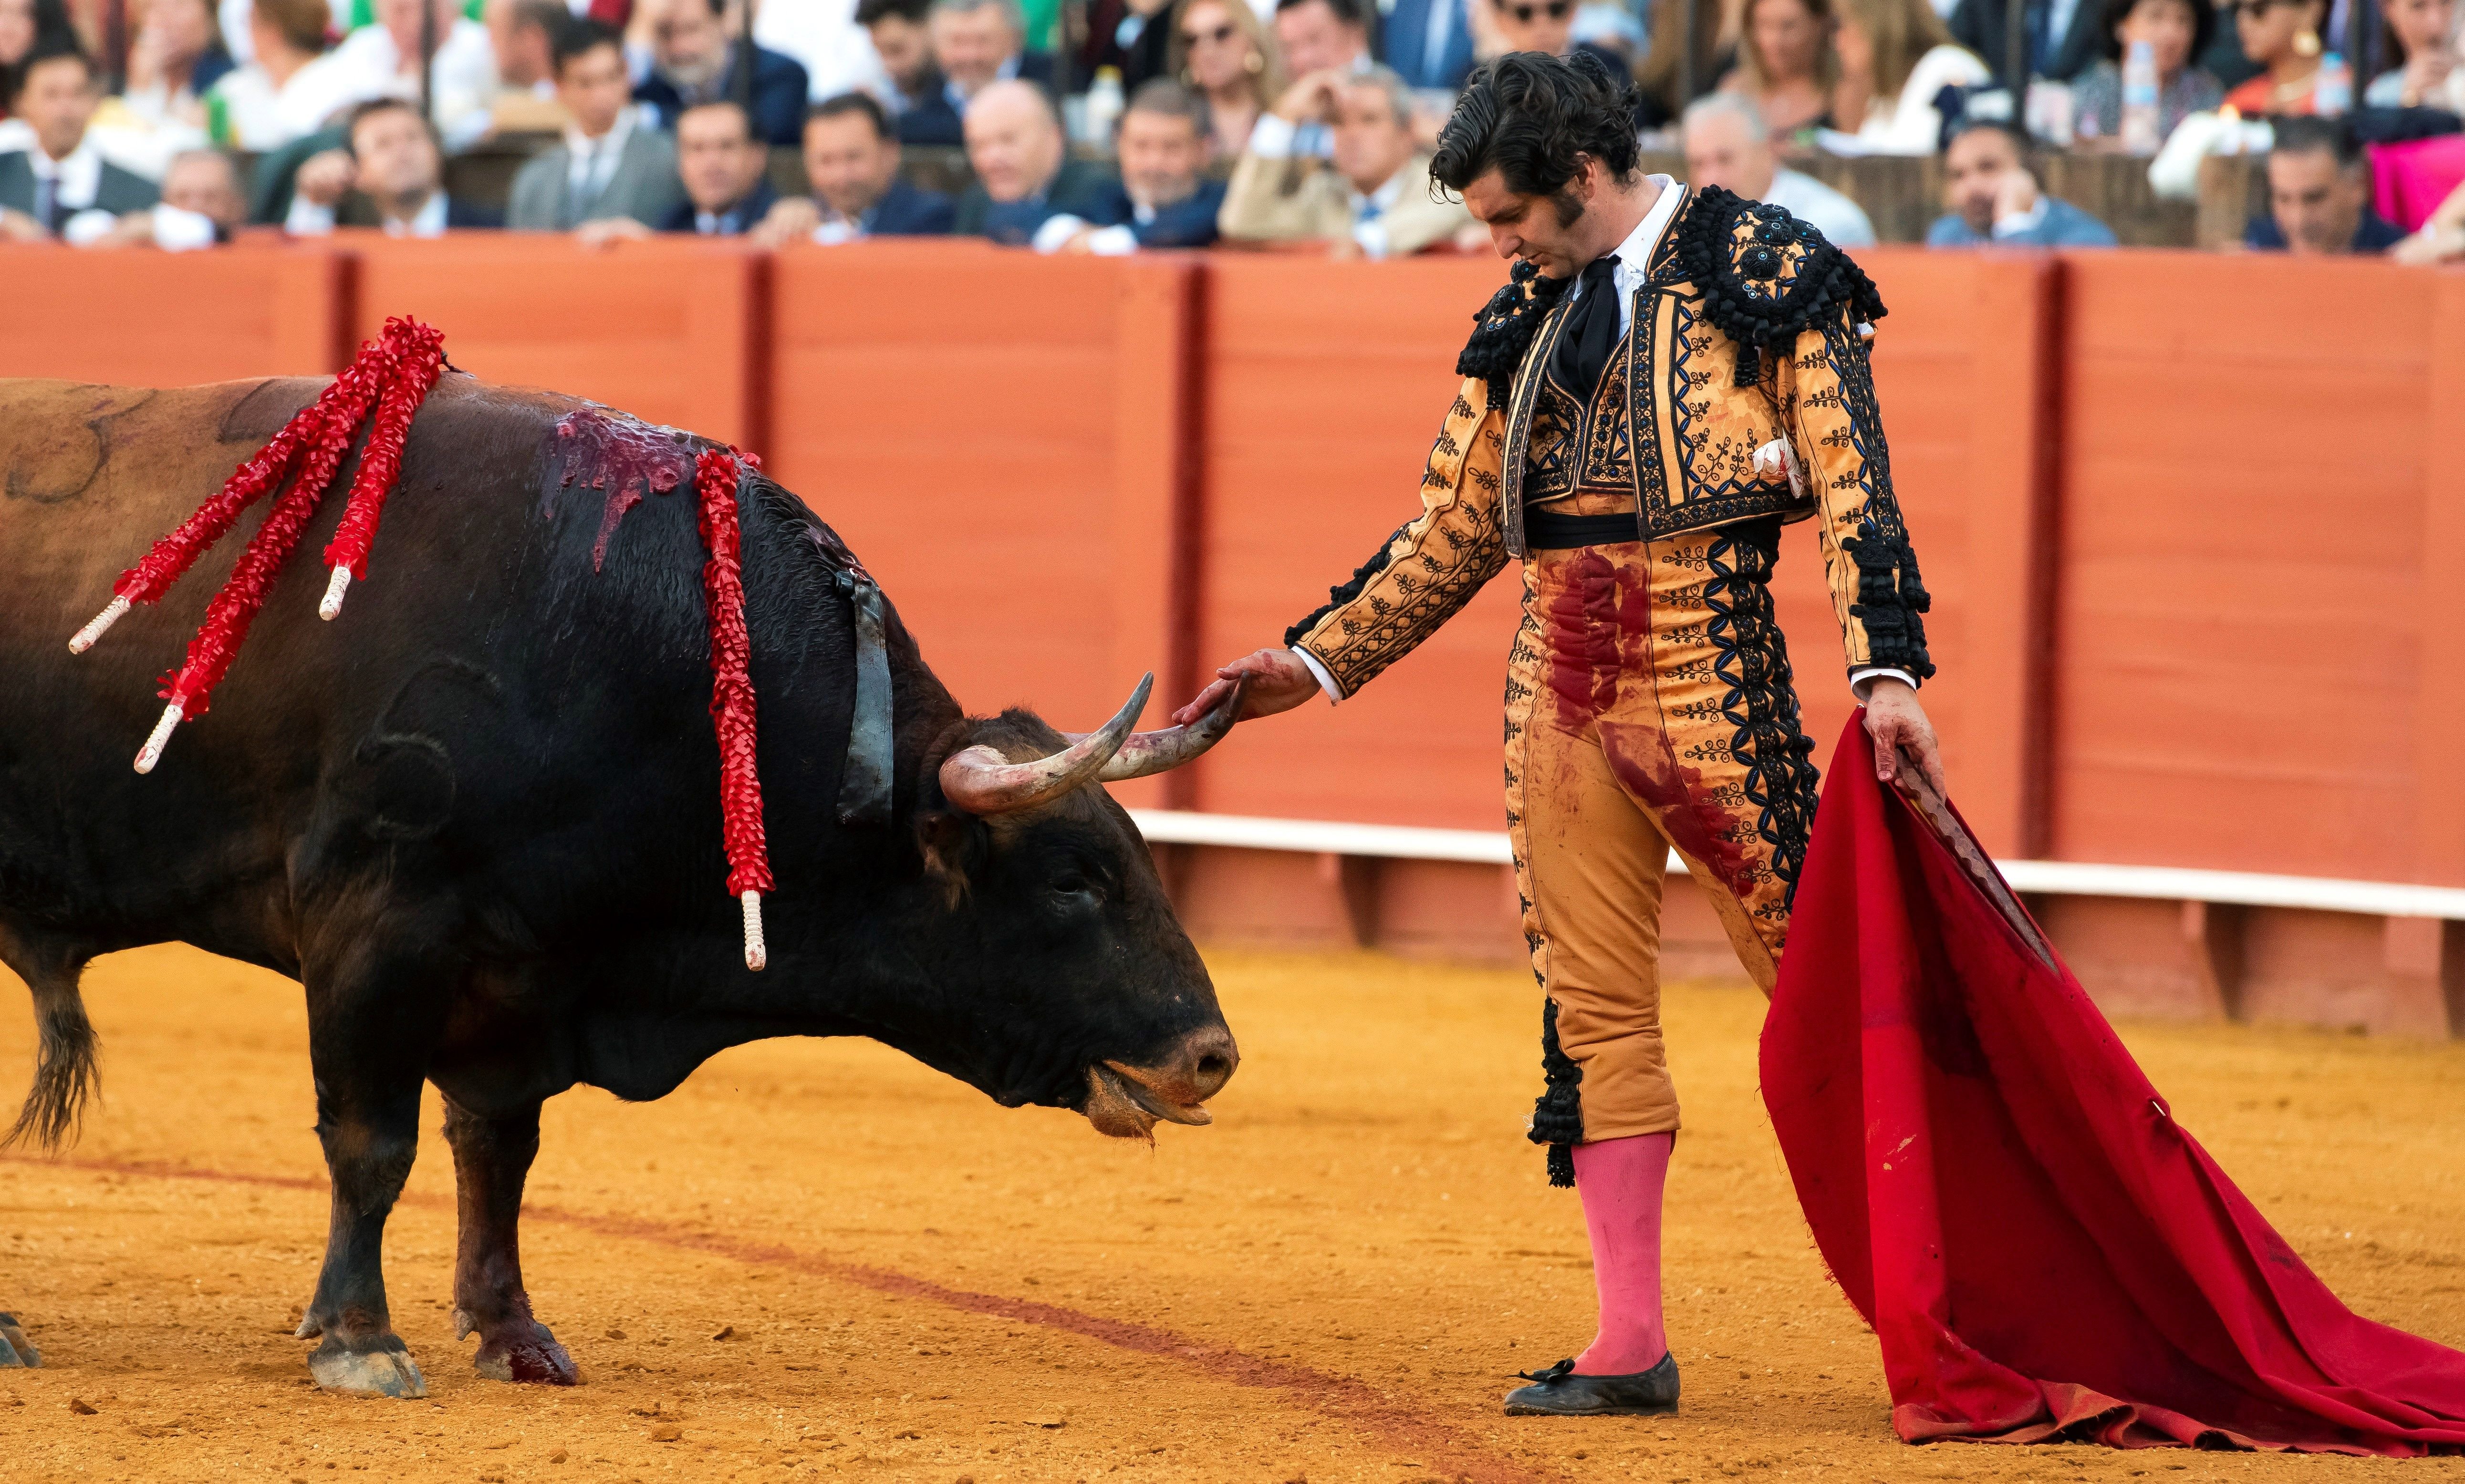 'Daily Mail' destapa como en España entrenan a menores a matar toros